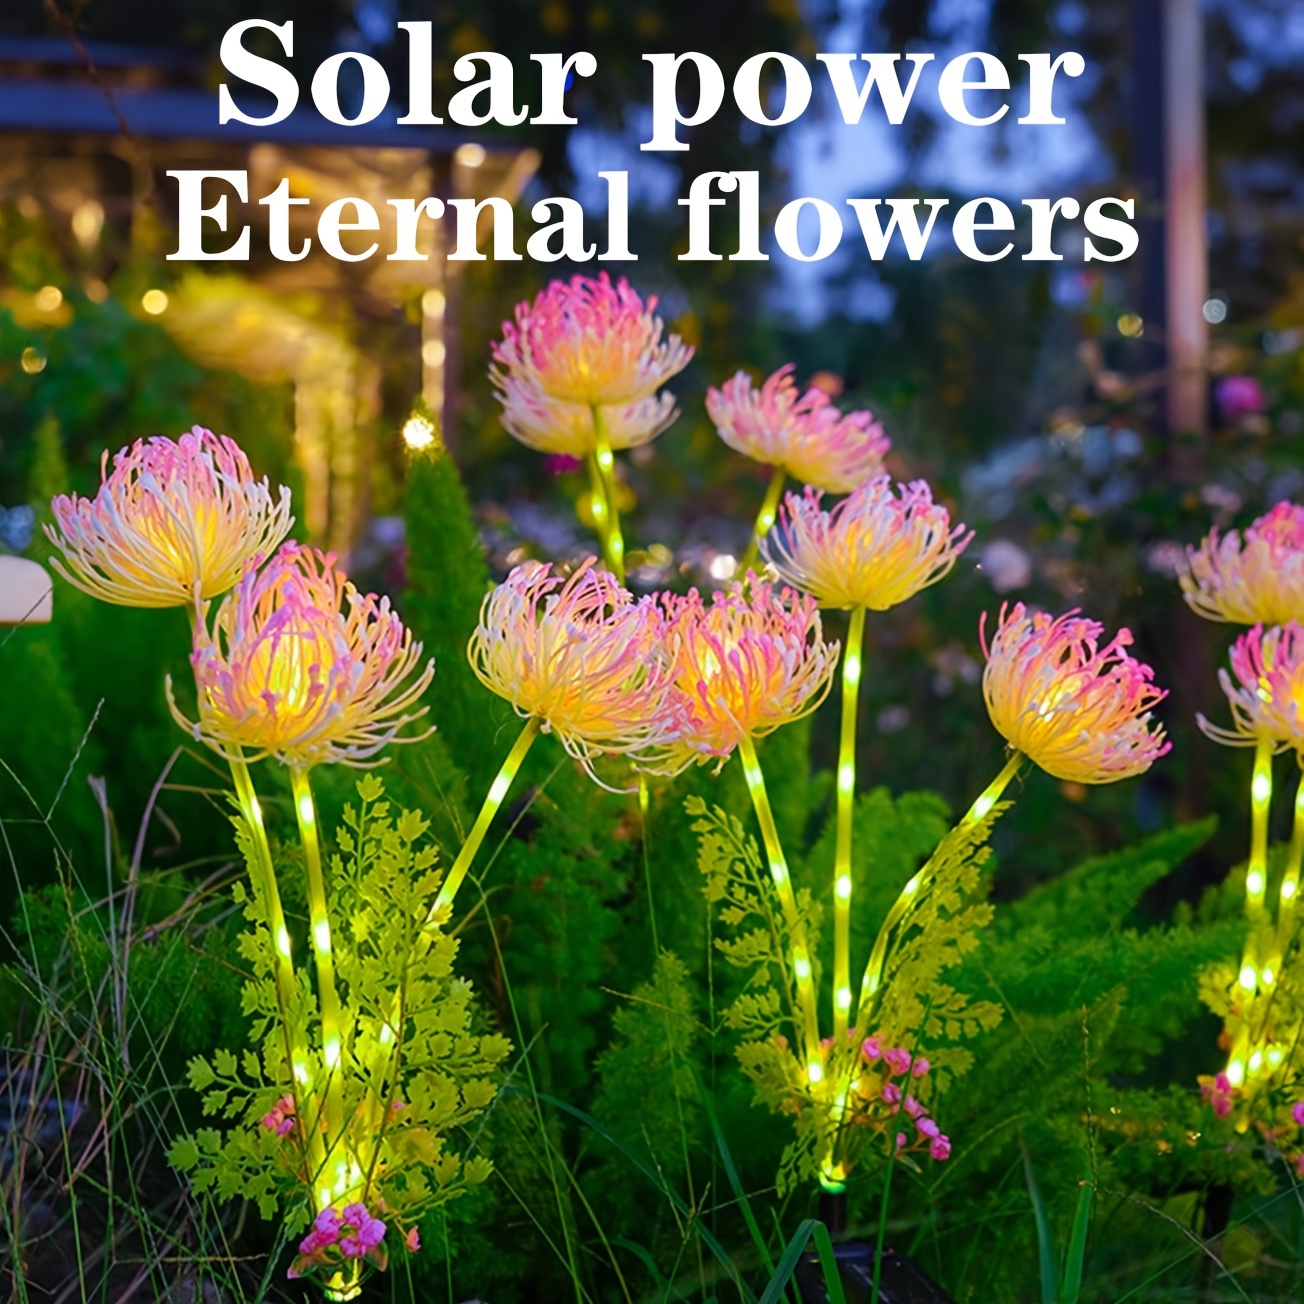 Solarbetriebene automatische Schaukel tanzende Blume Dekoration